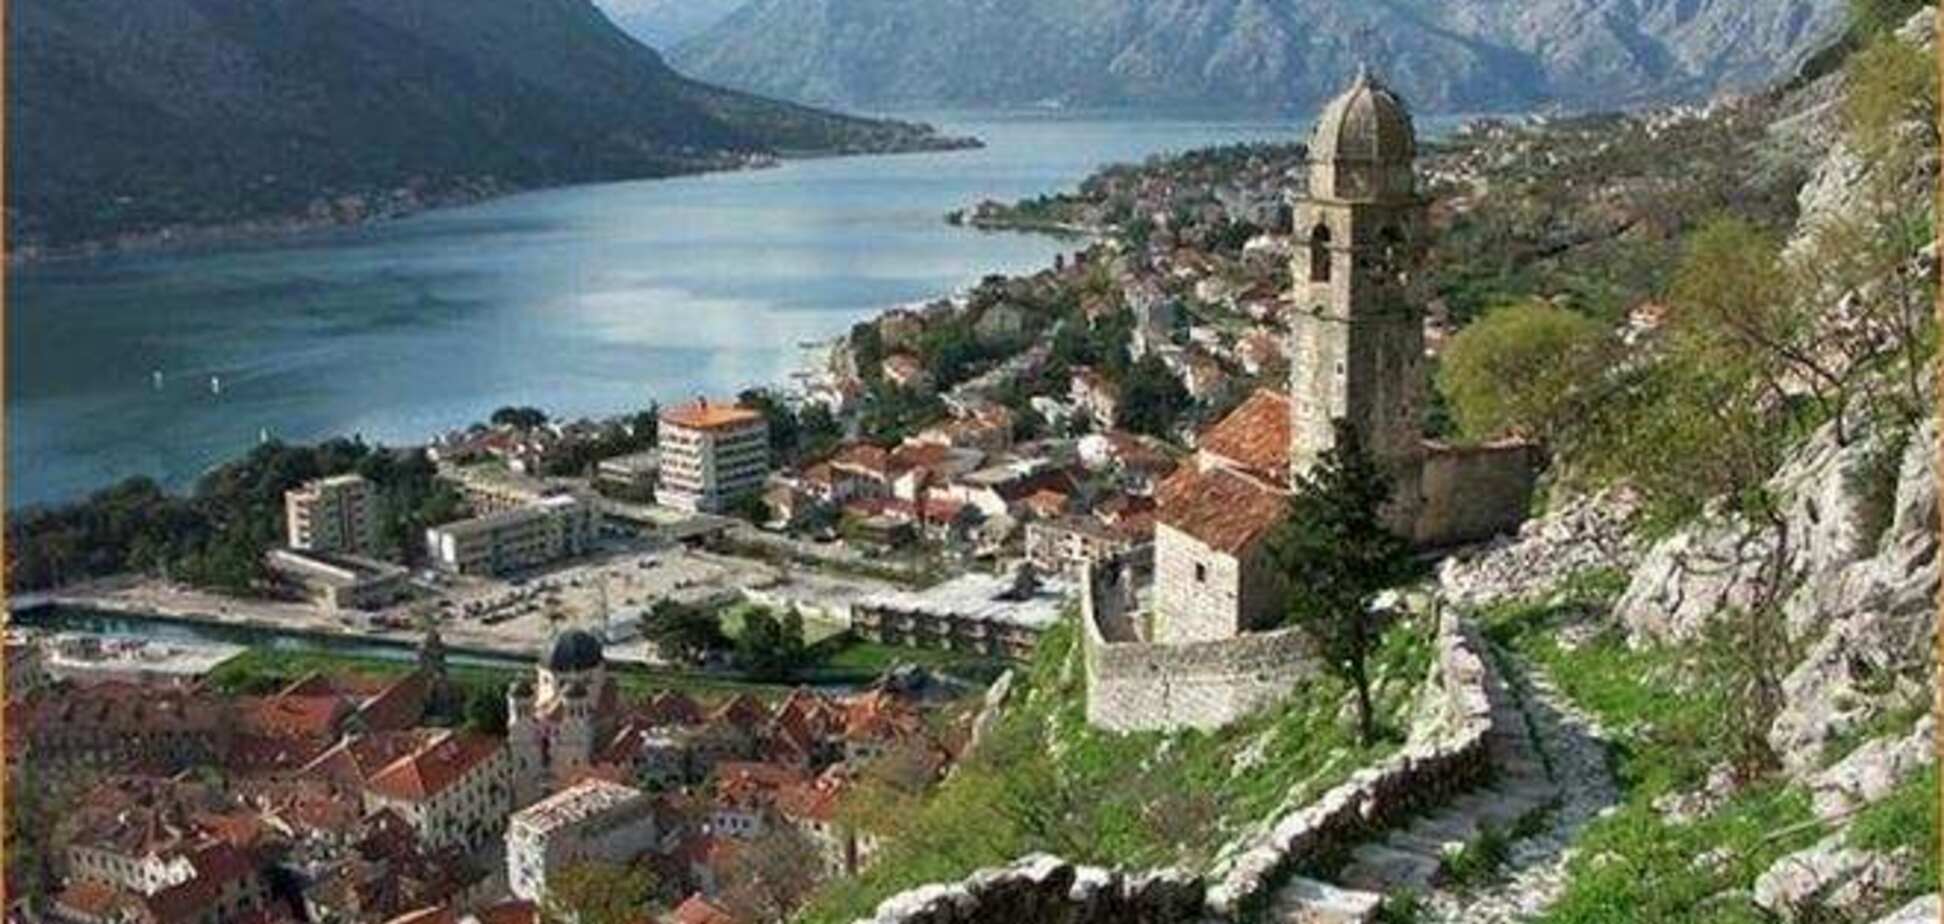 Отели Черногории подешевели на четверть по сравнению с летним сезоном 